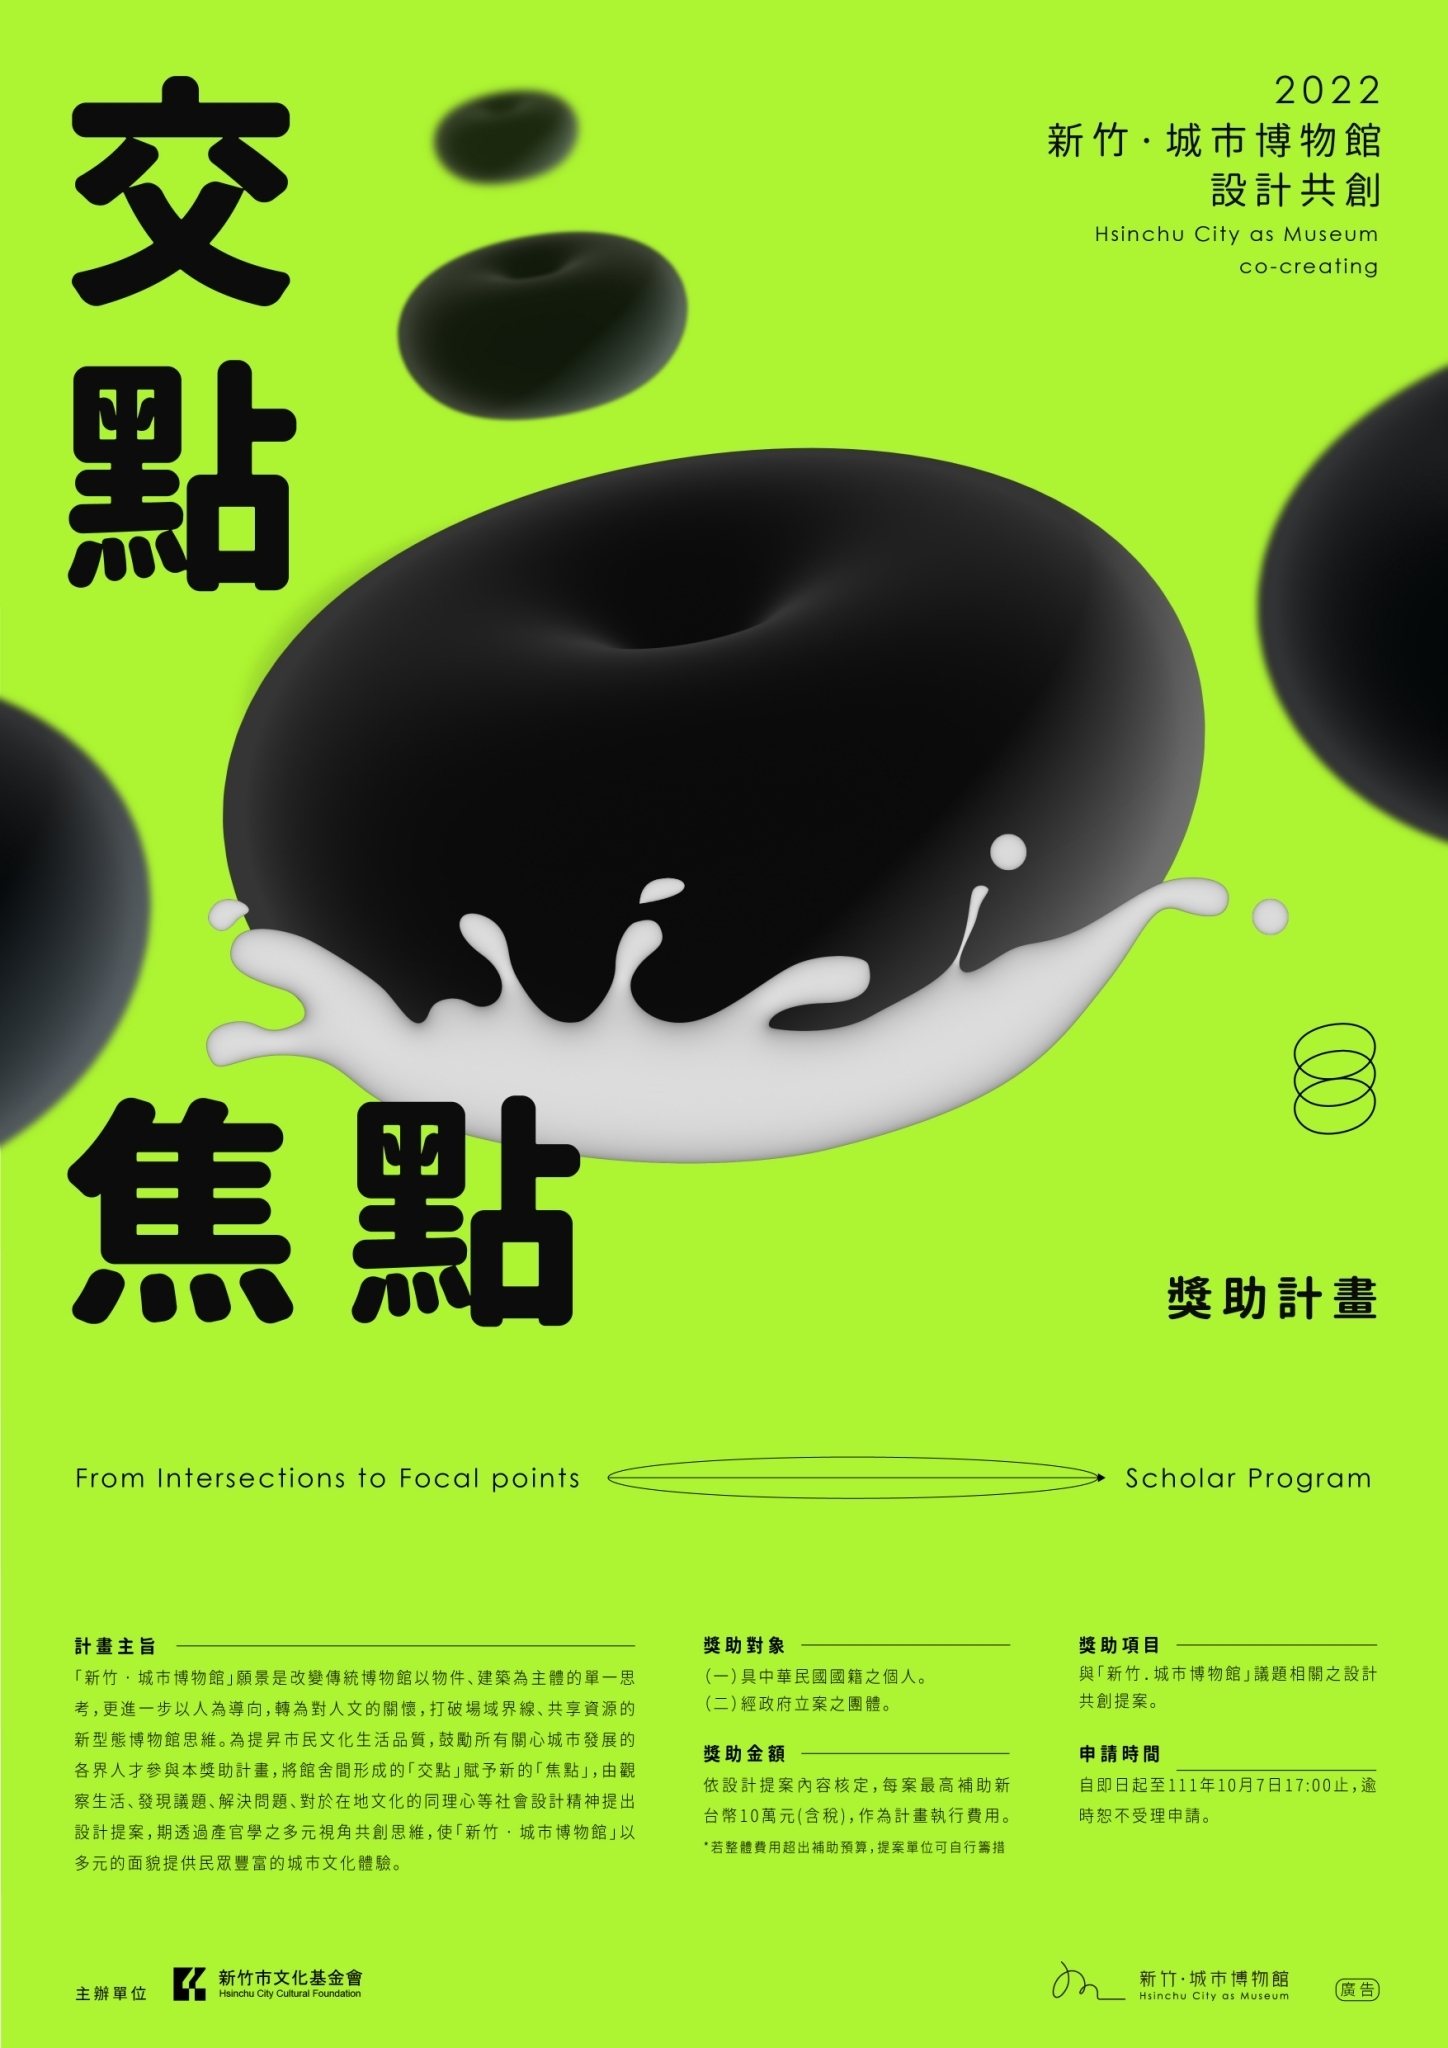 交點 · 焦點 -「新竹．城市博物館」設計共創獎助計畫